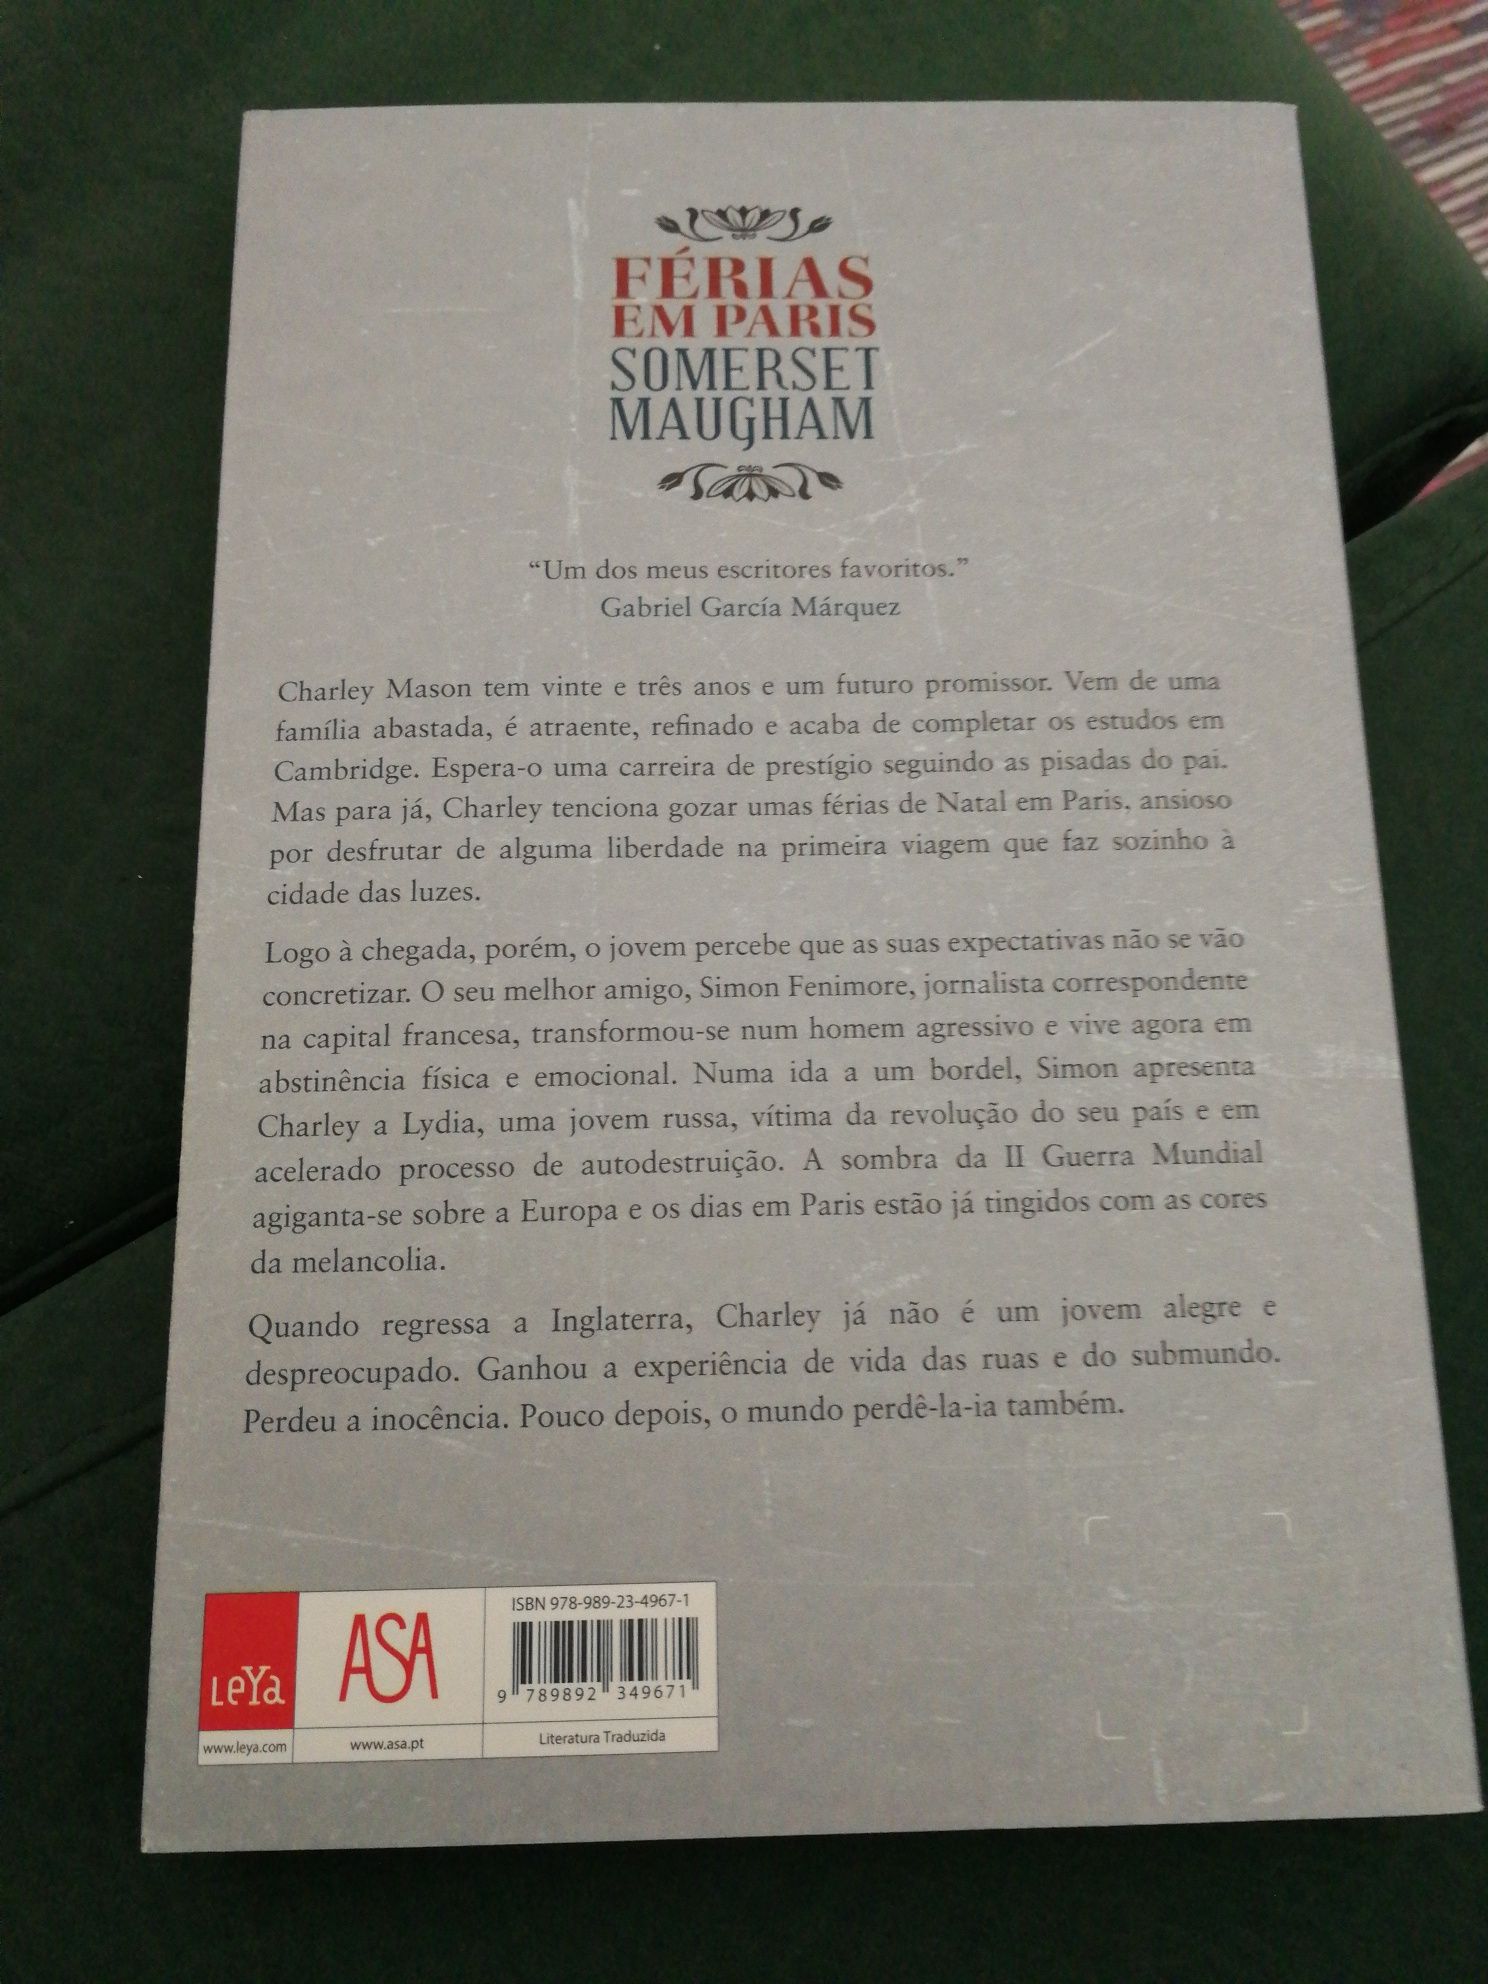 Livro "Férias em Paris" de Somerset Maugham